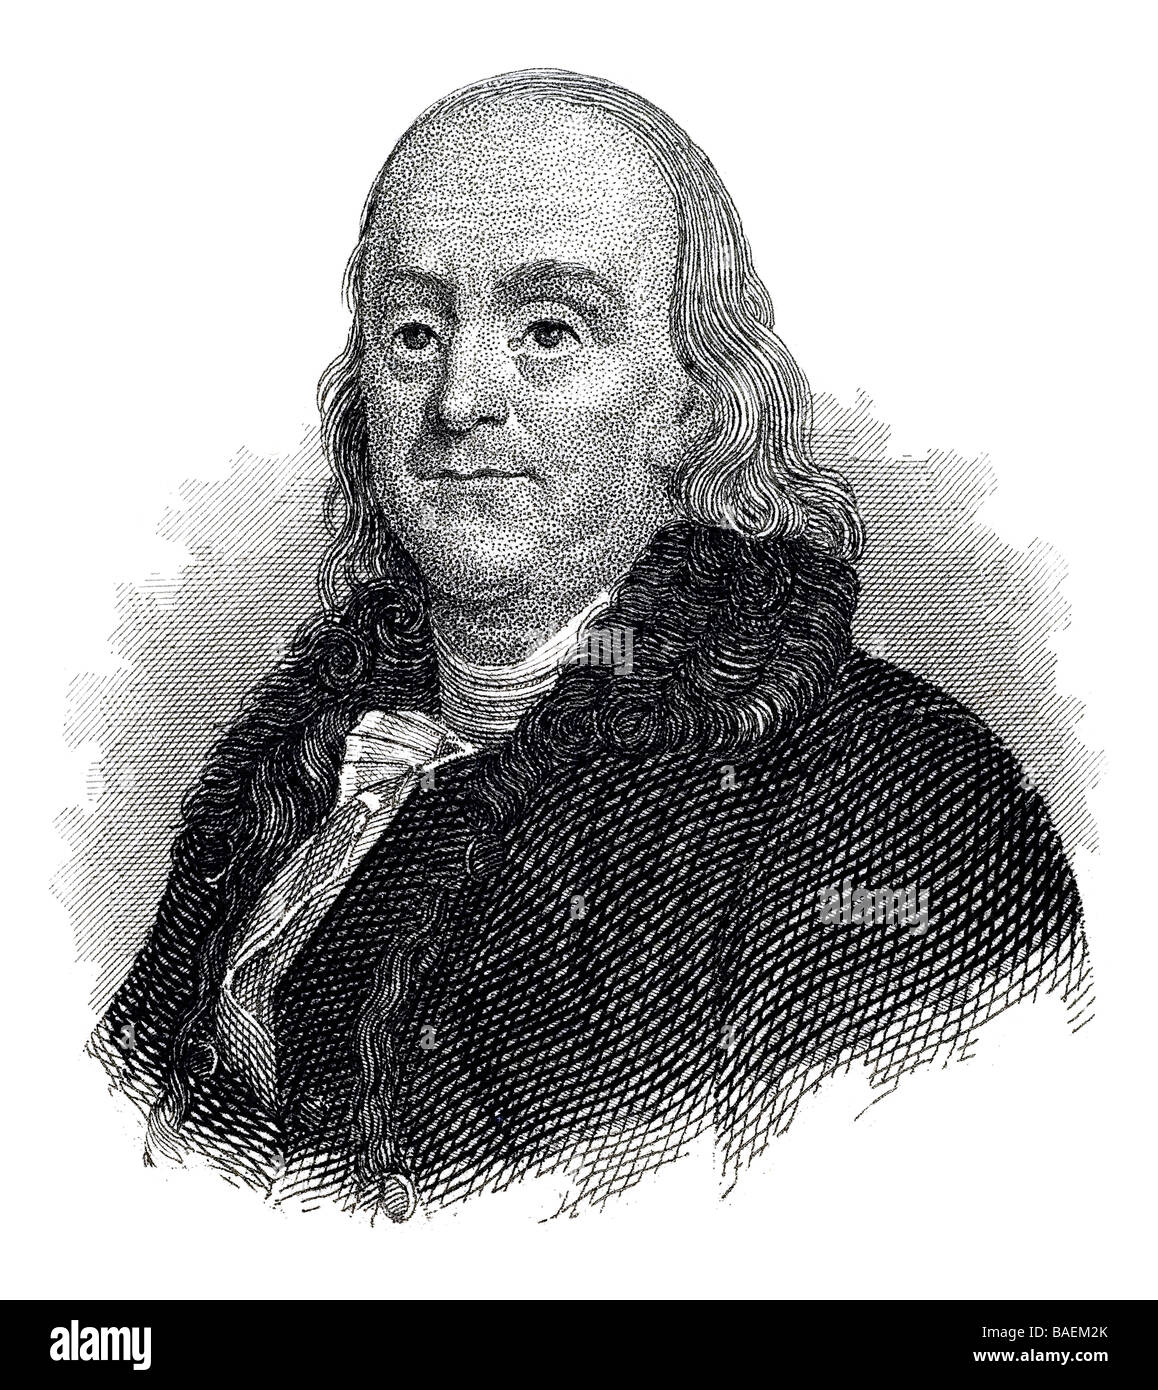 Benjamin Franklin Stock Photo